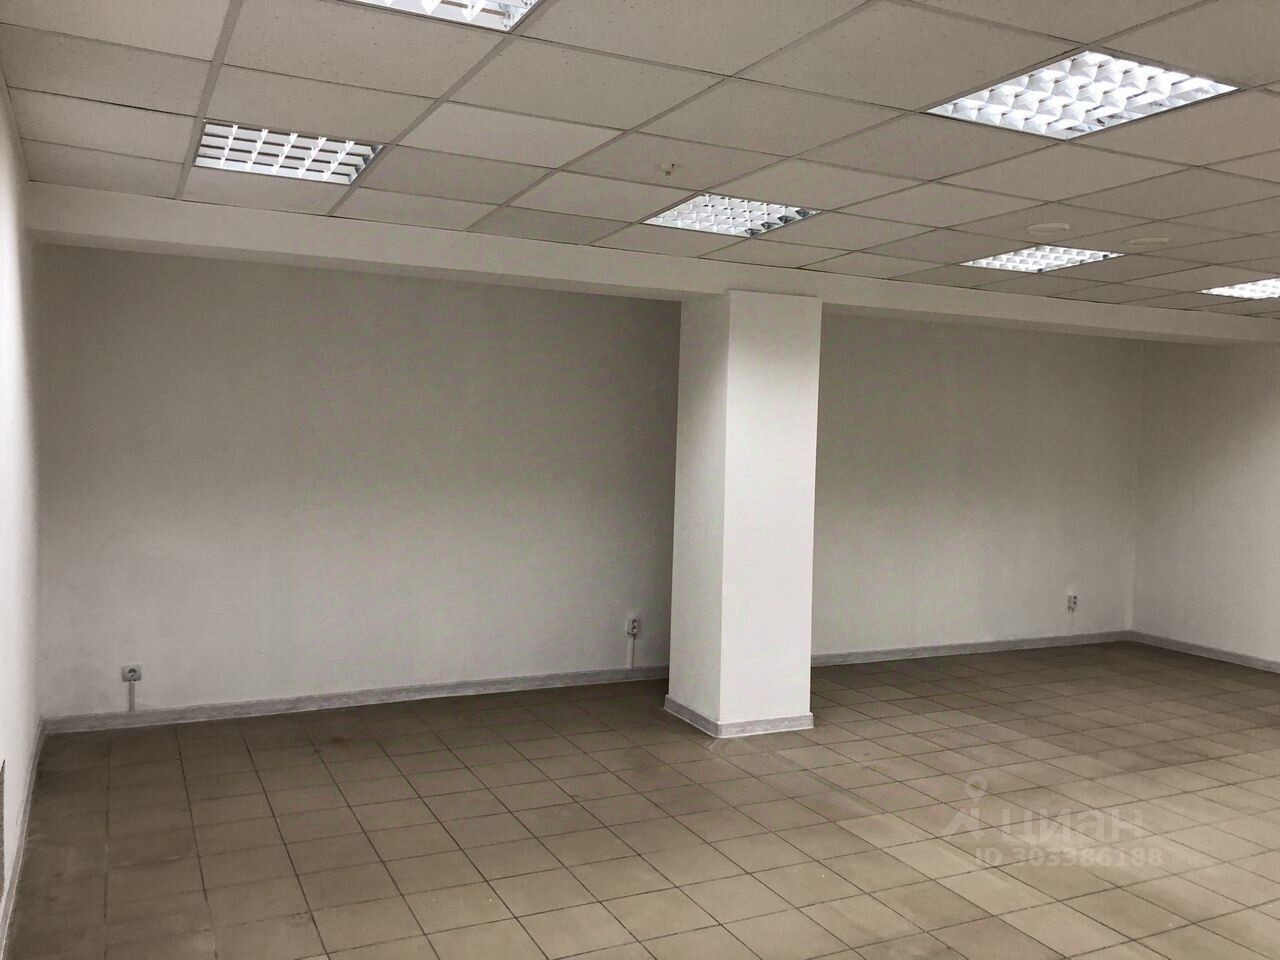 Сдается офис 51 кв.м на 1 этаже в Екатеринбурге. Просторное помещение без отделки, готовое к вашему дизайну.